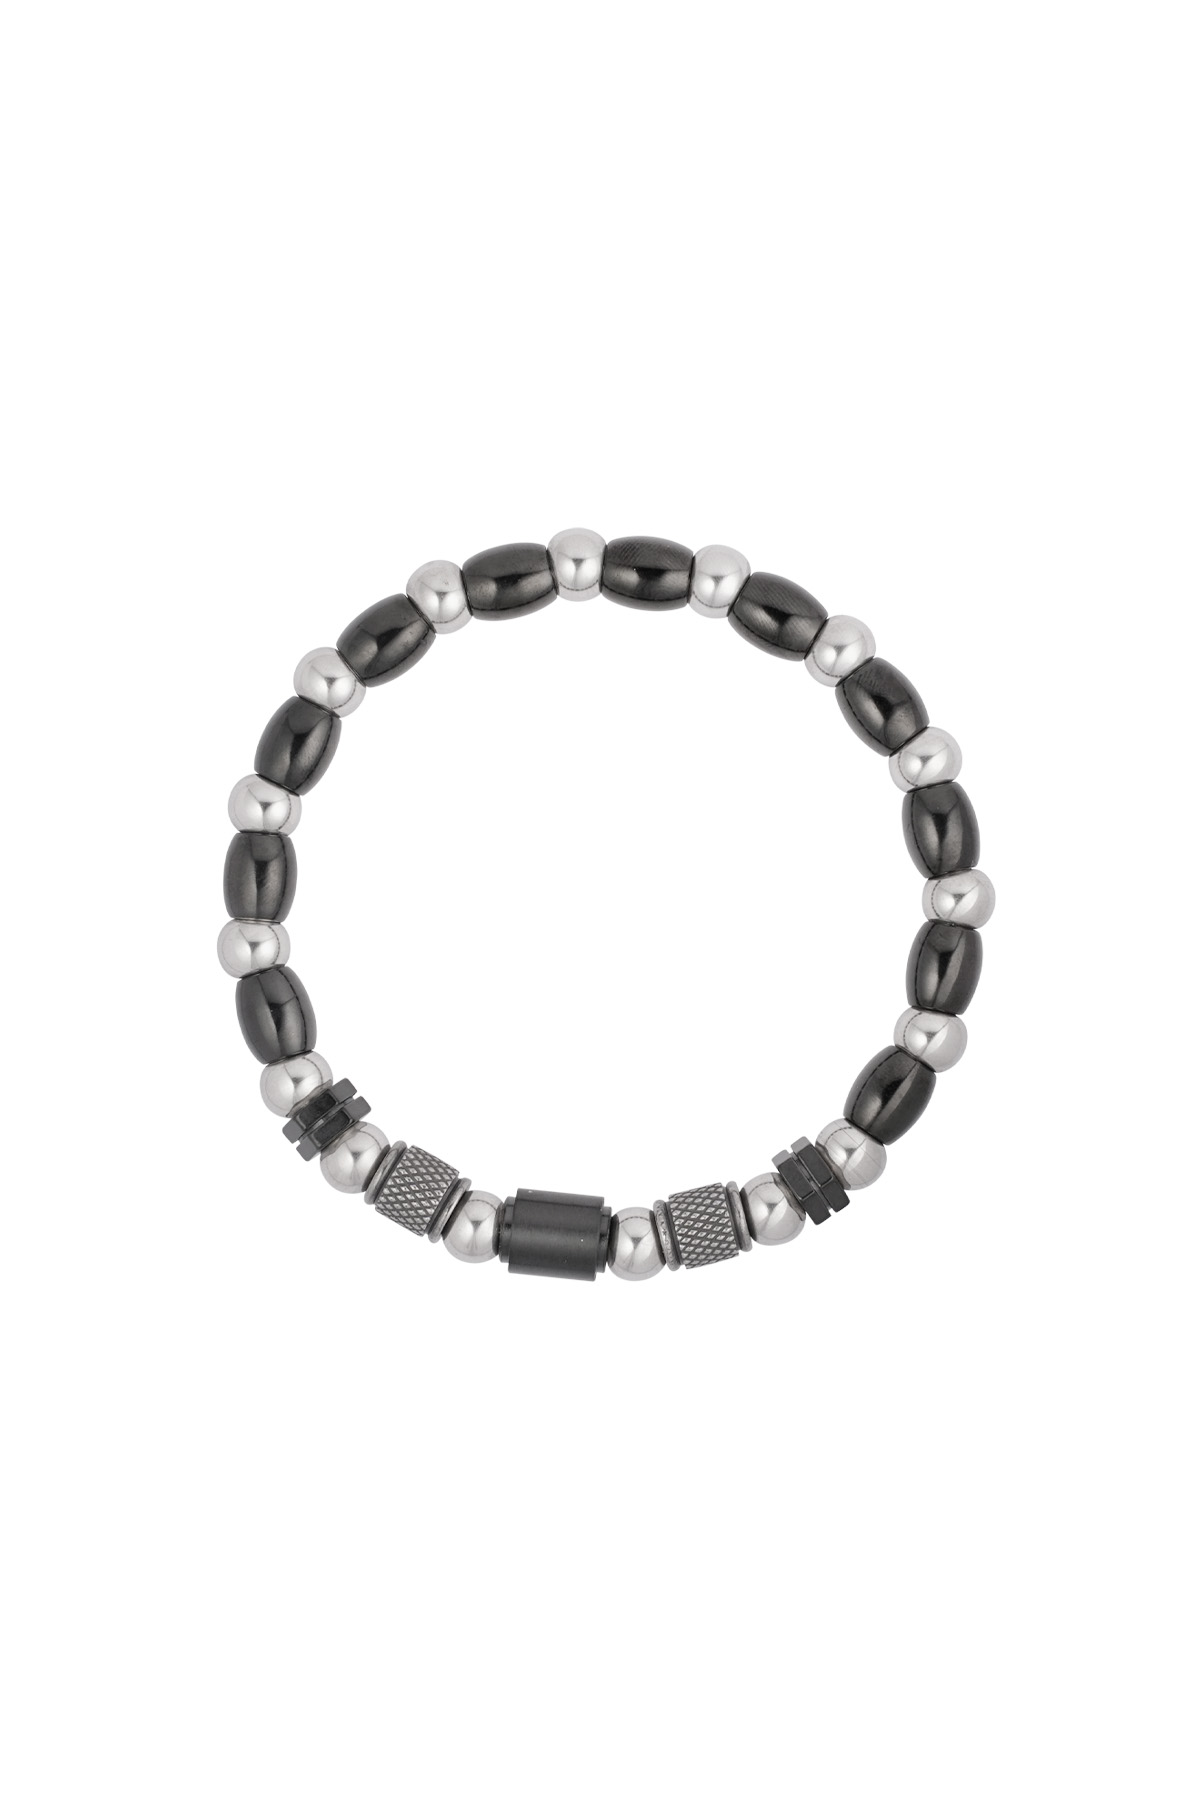 Heren armband zenith - zwart zilver h5 Afbeelding2